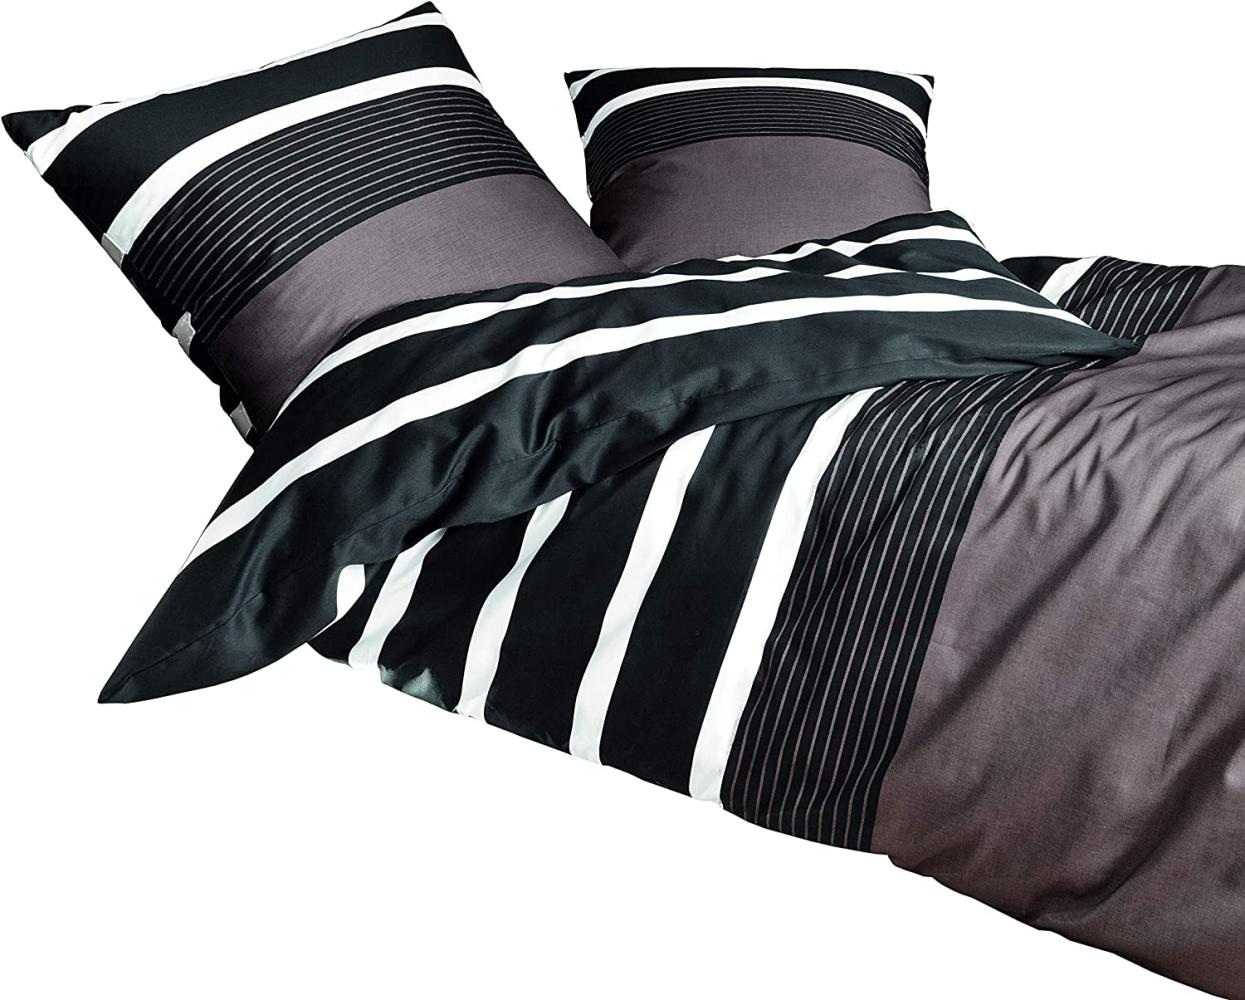 Janine Mako Satin Bettwäsche 2 teilig Bettbezug 135 x 200 cm Kopfkissenbezug 80 x 80 cm Streifen Nougat schwarz Bild 1